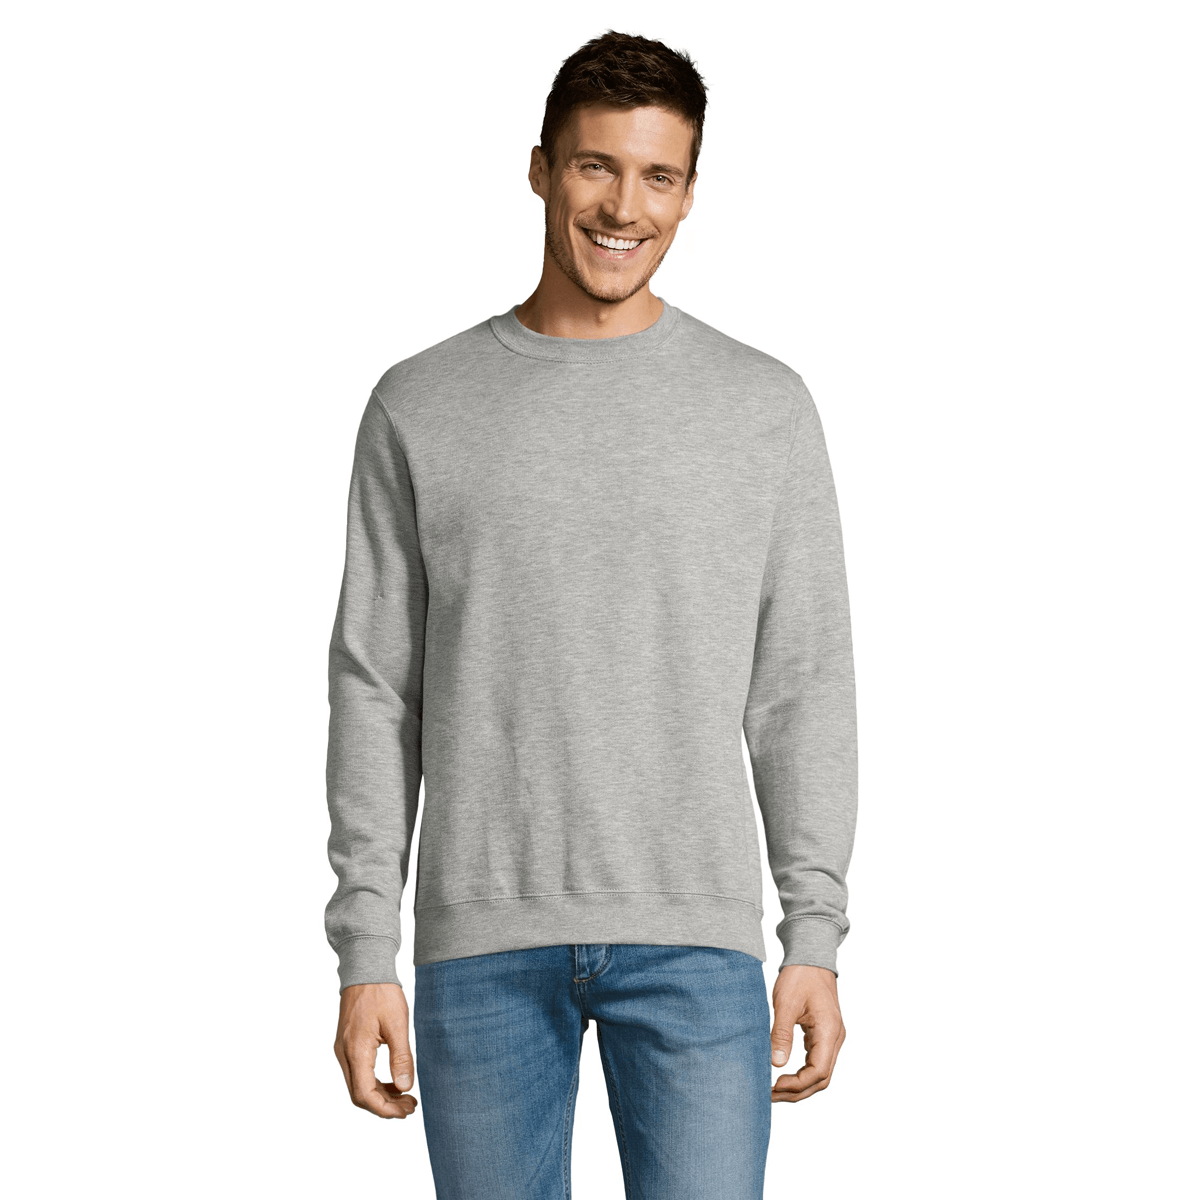 Premium sweater